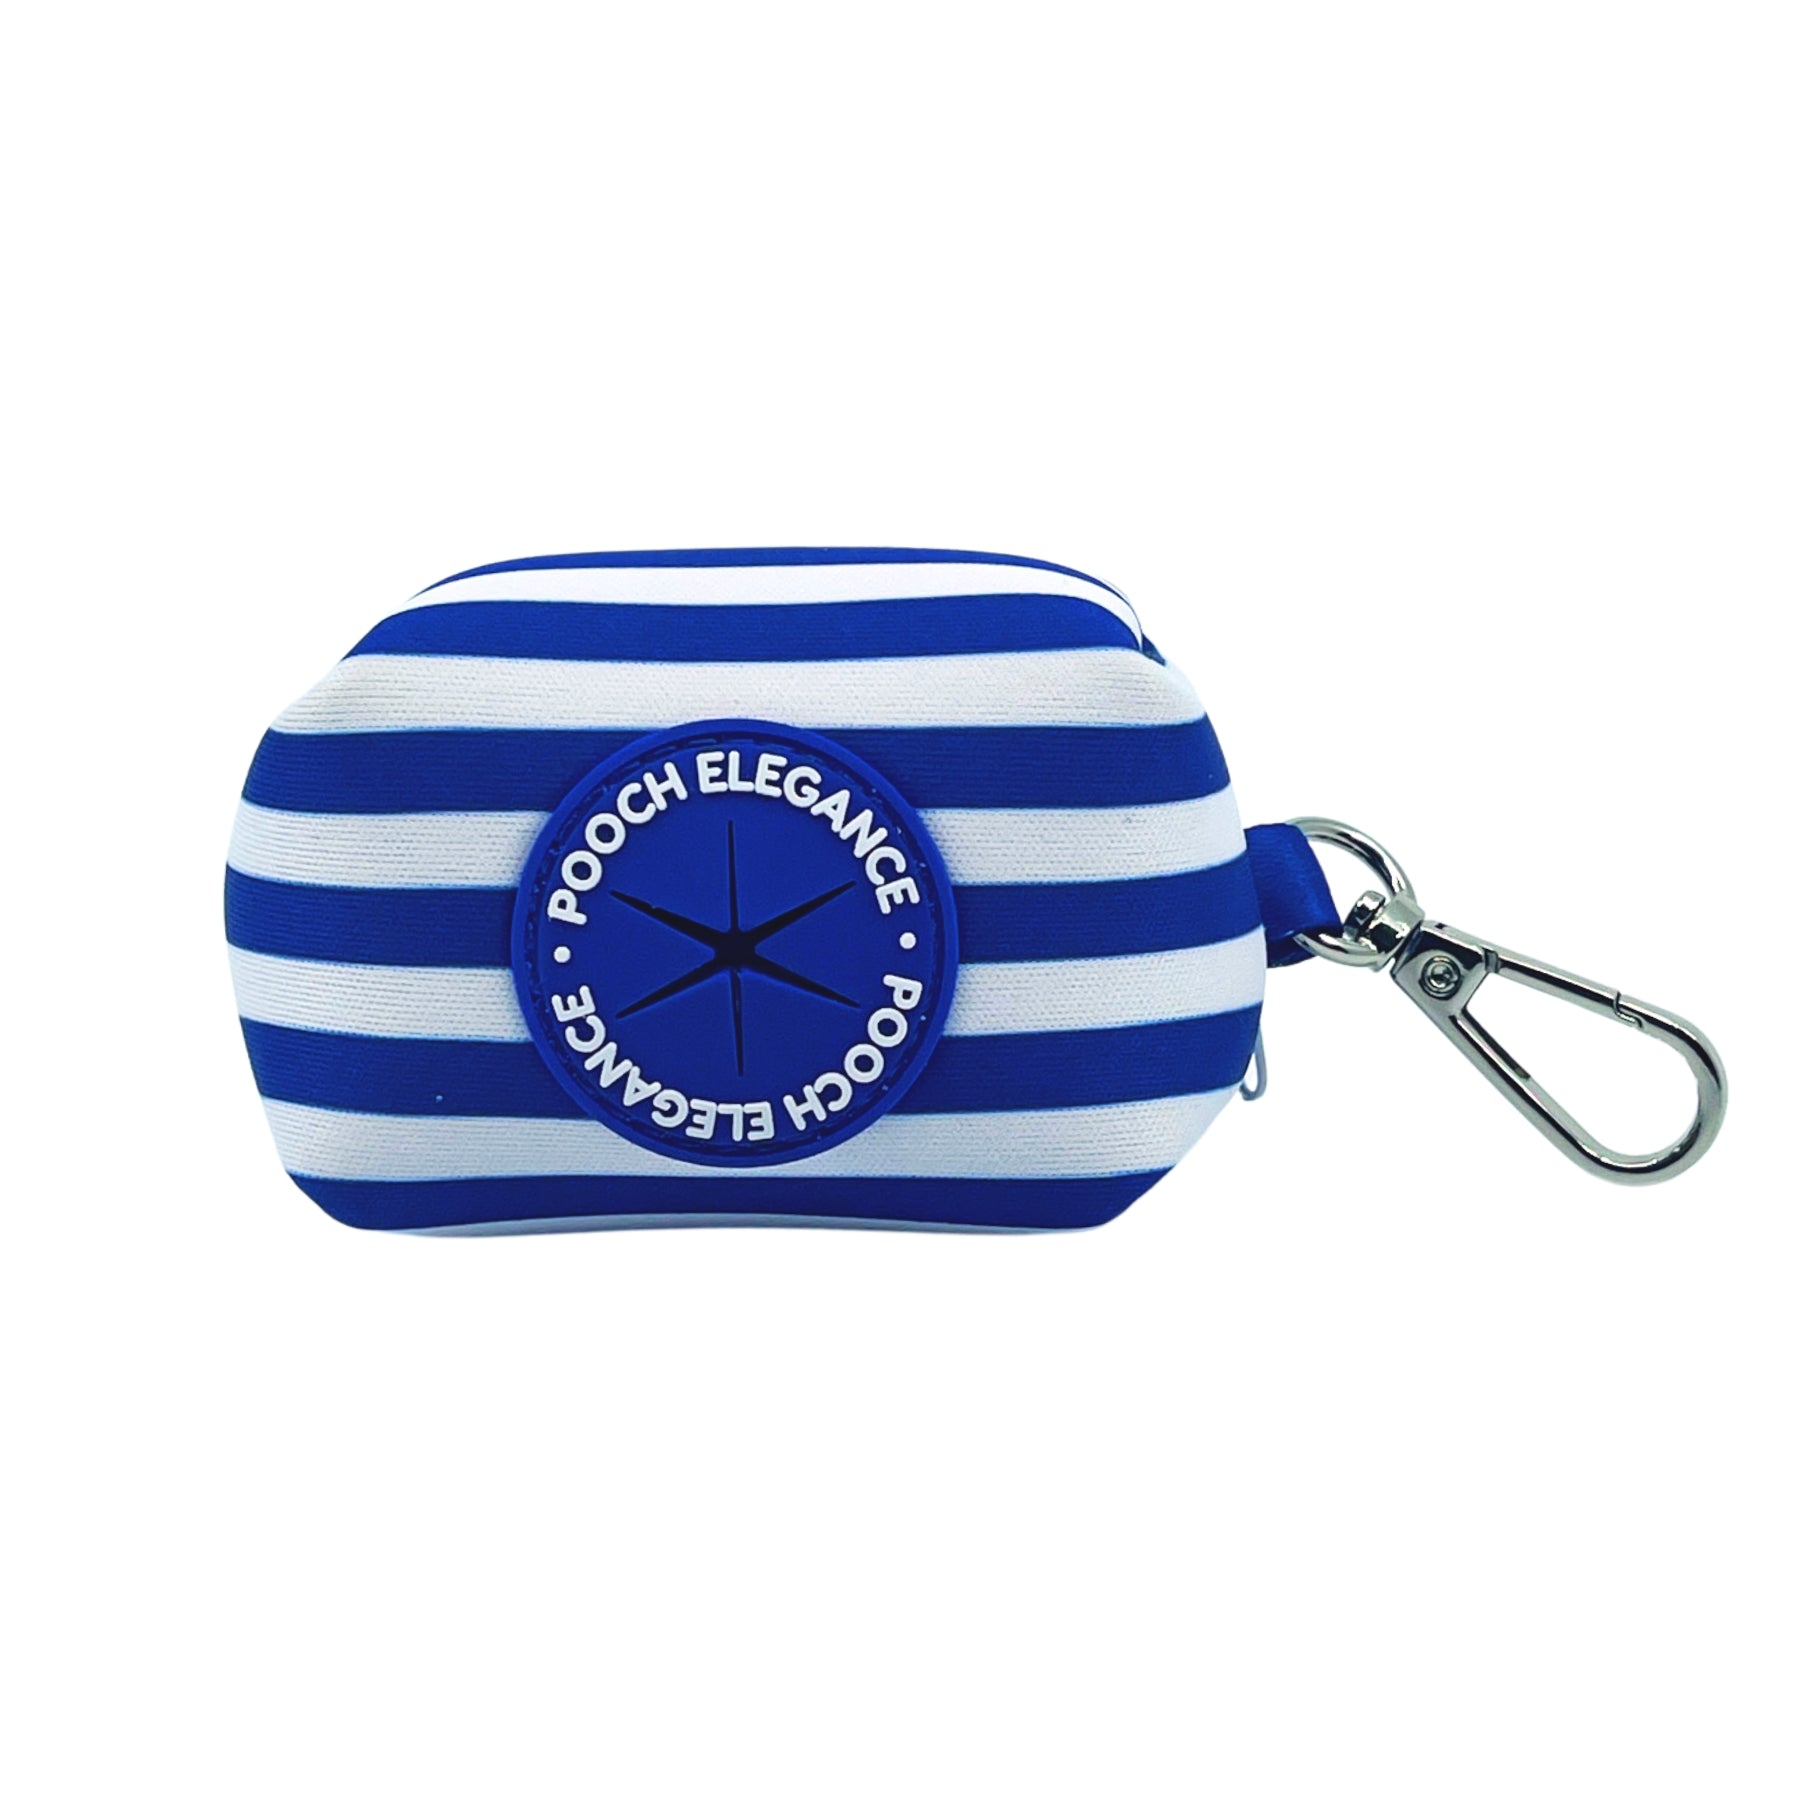 Carnival Stripe - Royal Blue Waste Bag Holder